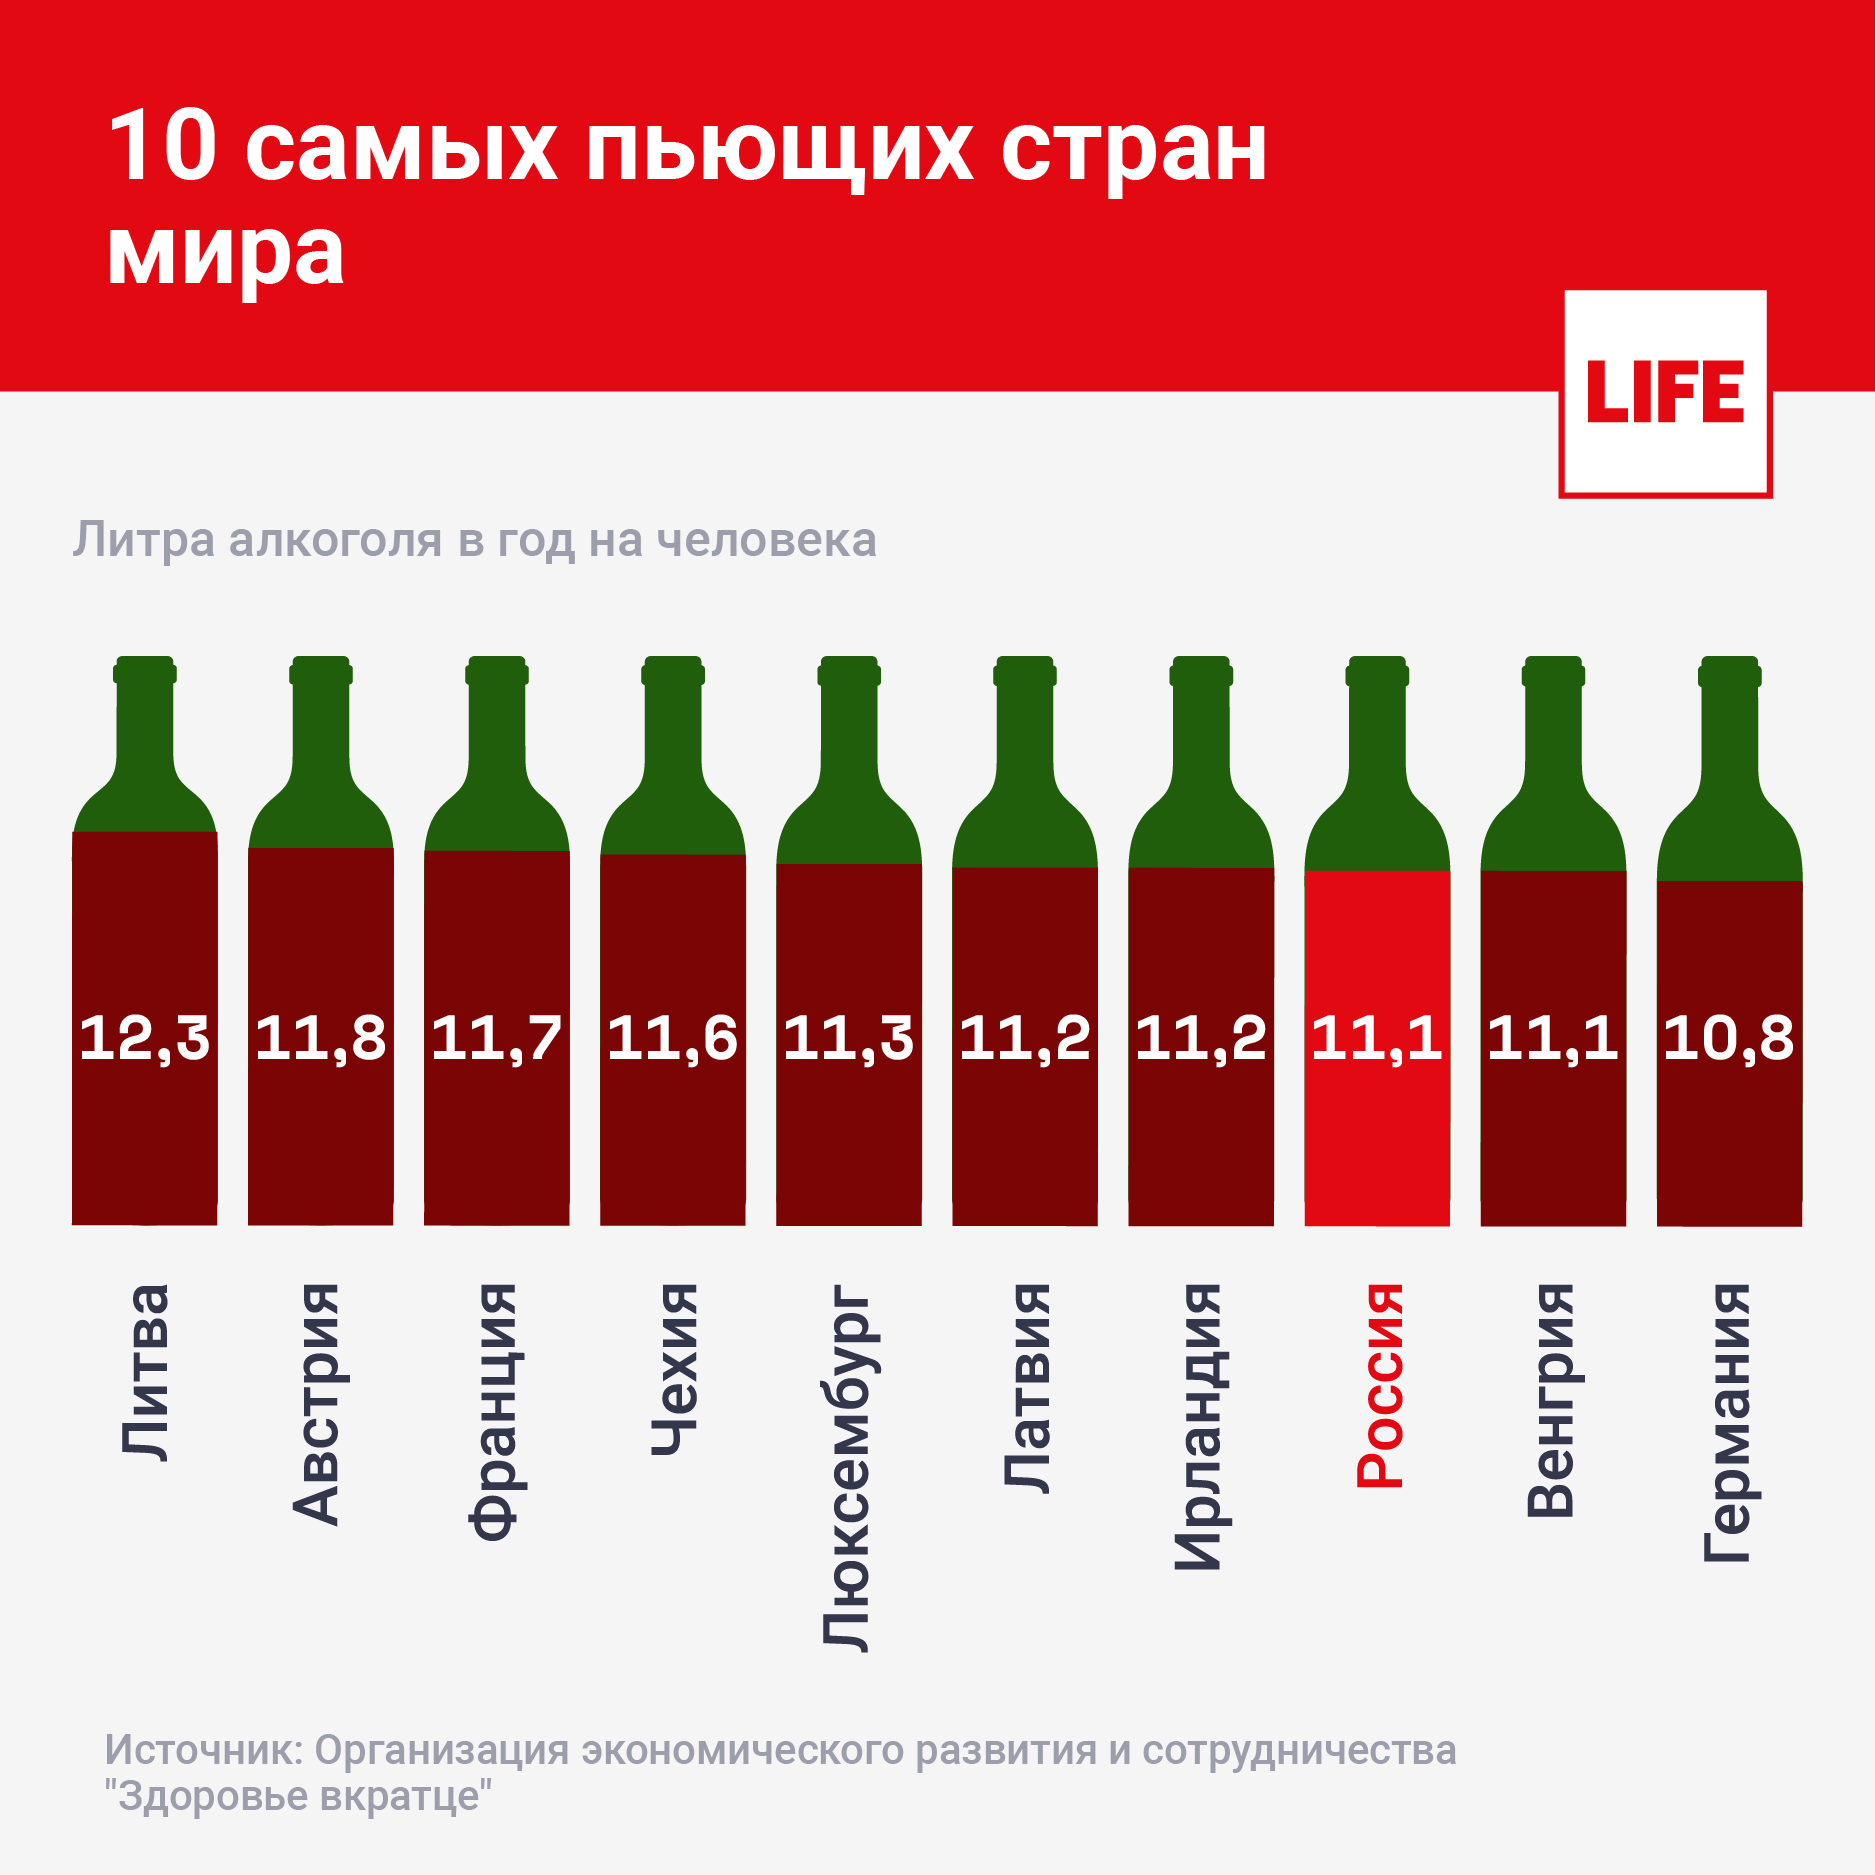 Сколько можно выпить, чтобы не стать алкоголиком